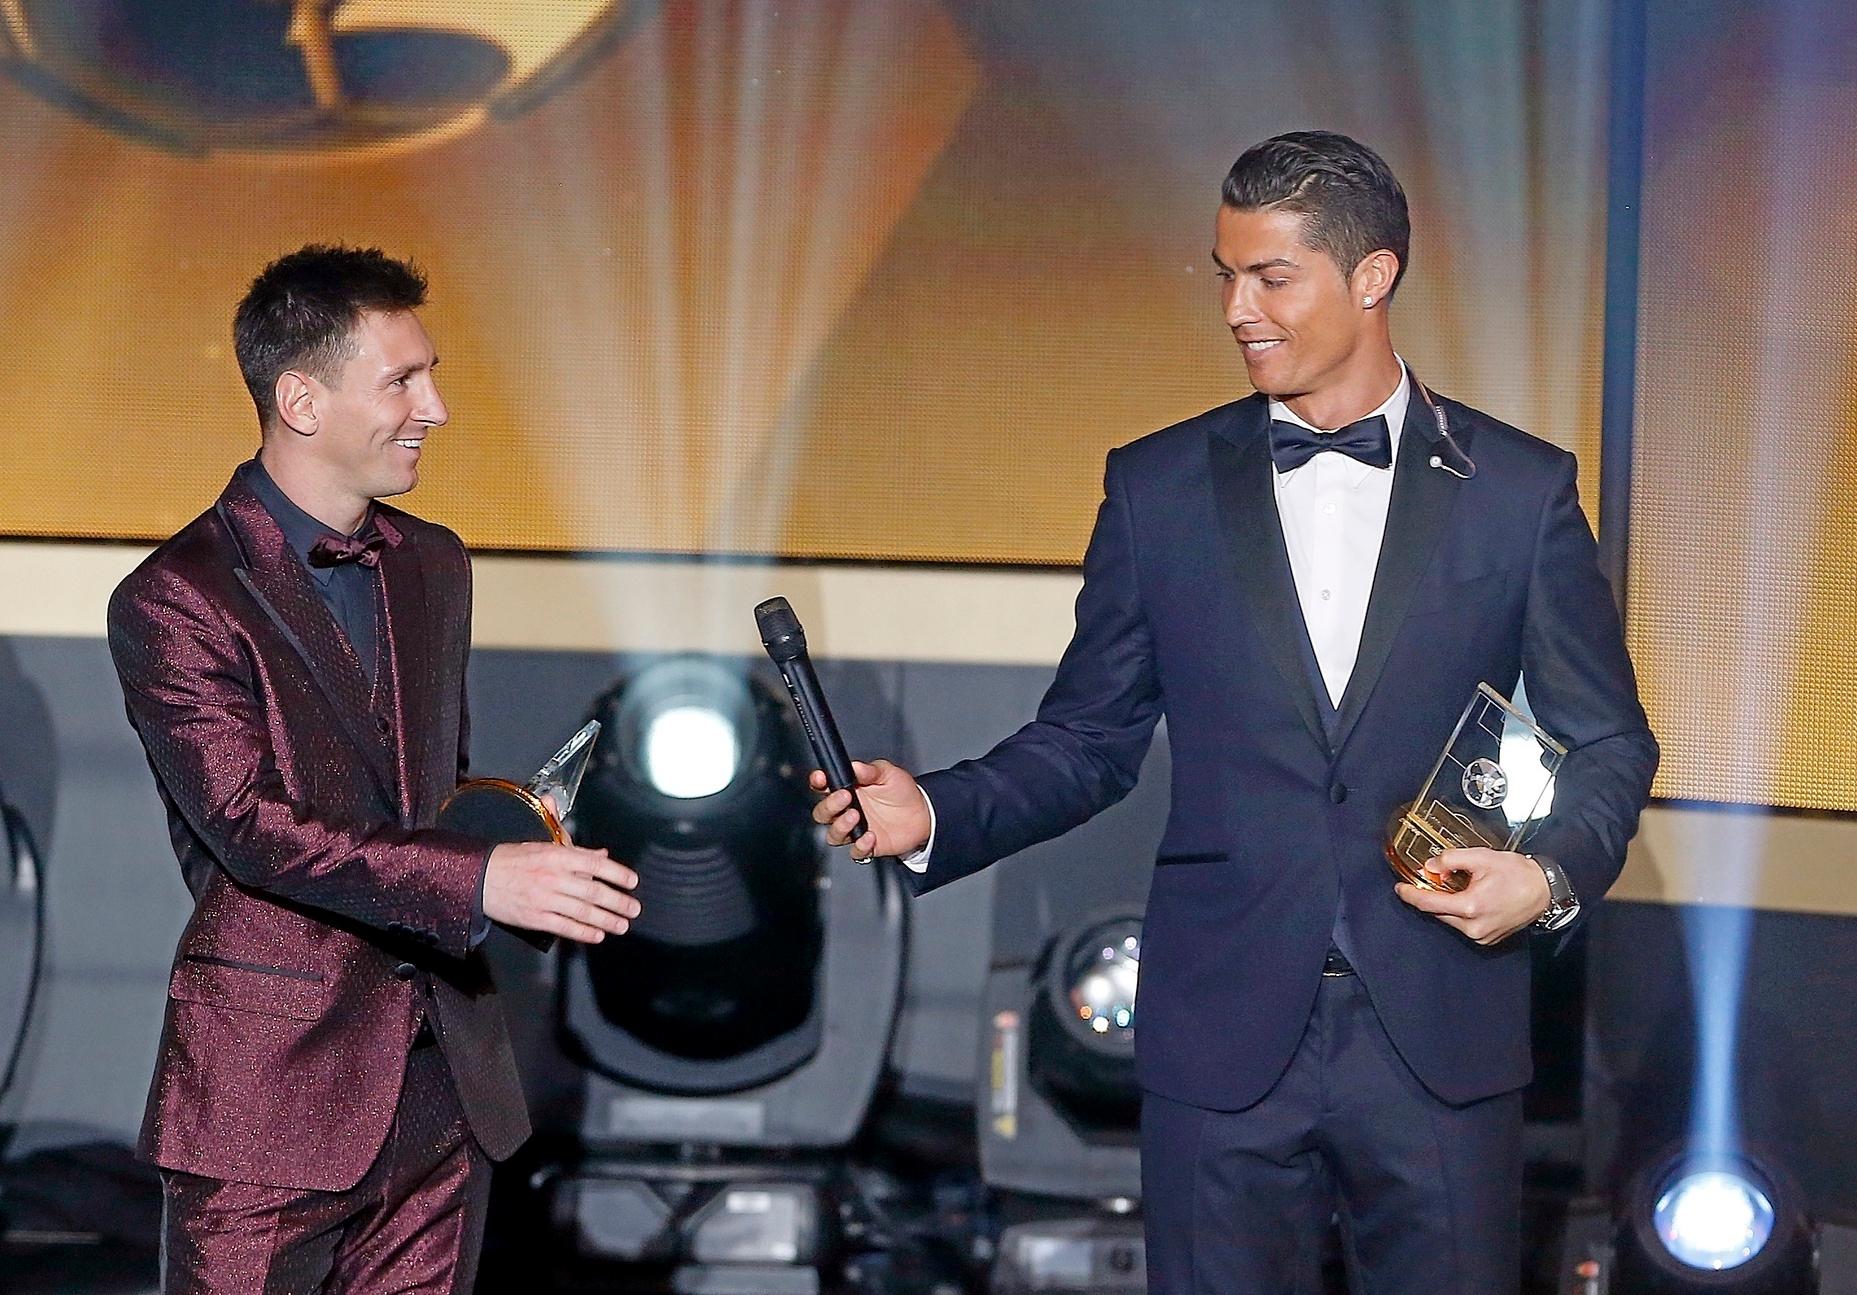 France Football đã trao giải Quả bóng vàng cho Cristiano Ronaldo - một trong những siêu sao bóng đá hàng đầu thế giới. Đừng bỏ qua cơ hội để chiêm ngưỡng hình ảnh của Ronaldo và chiếc cúp danh giá.